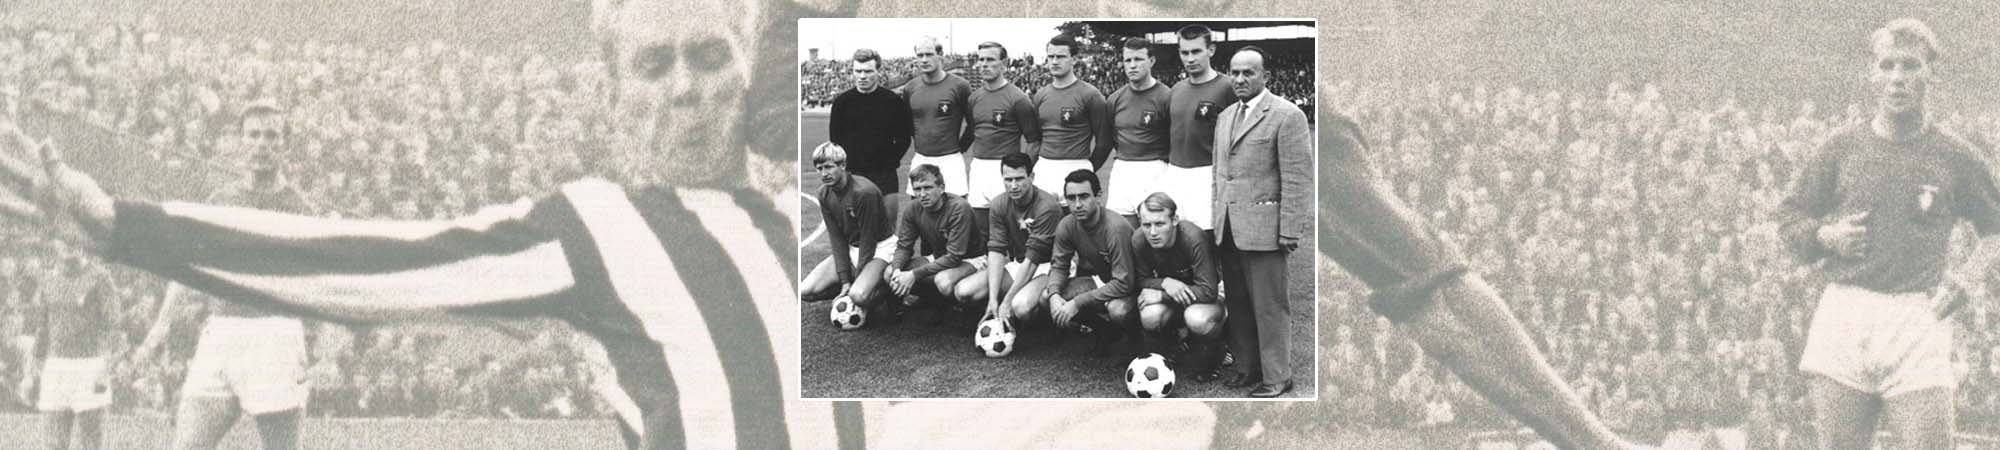 FC Twente seizoen 1965/1966